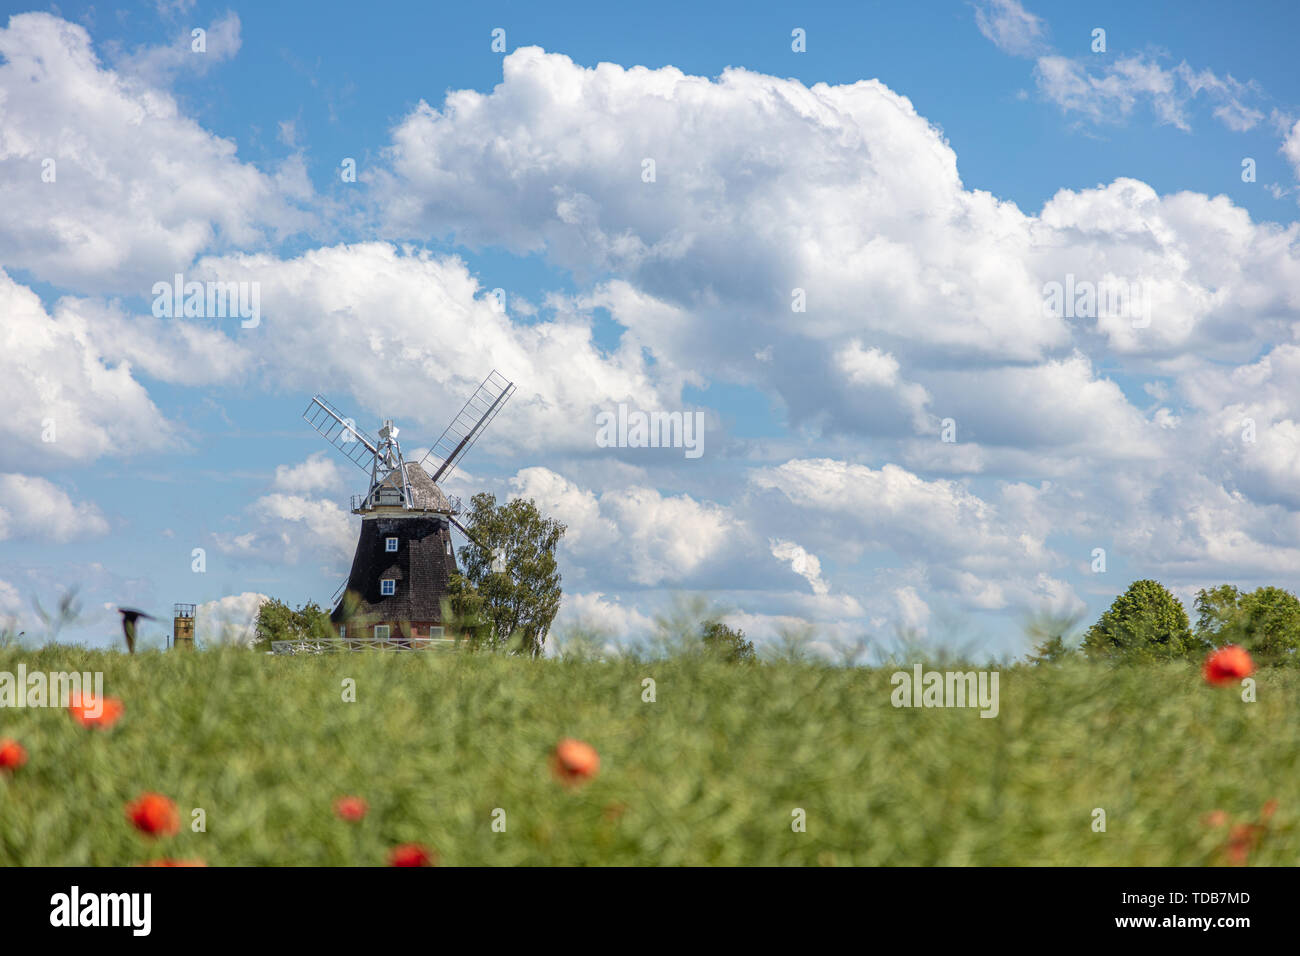 Un vieux moulin se dresse sur un champ de canola en face d'un ciel bleu avec des nuages blancs Banque D'Images